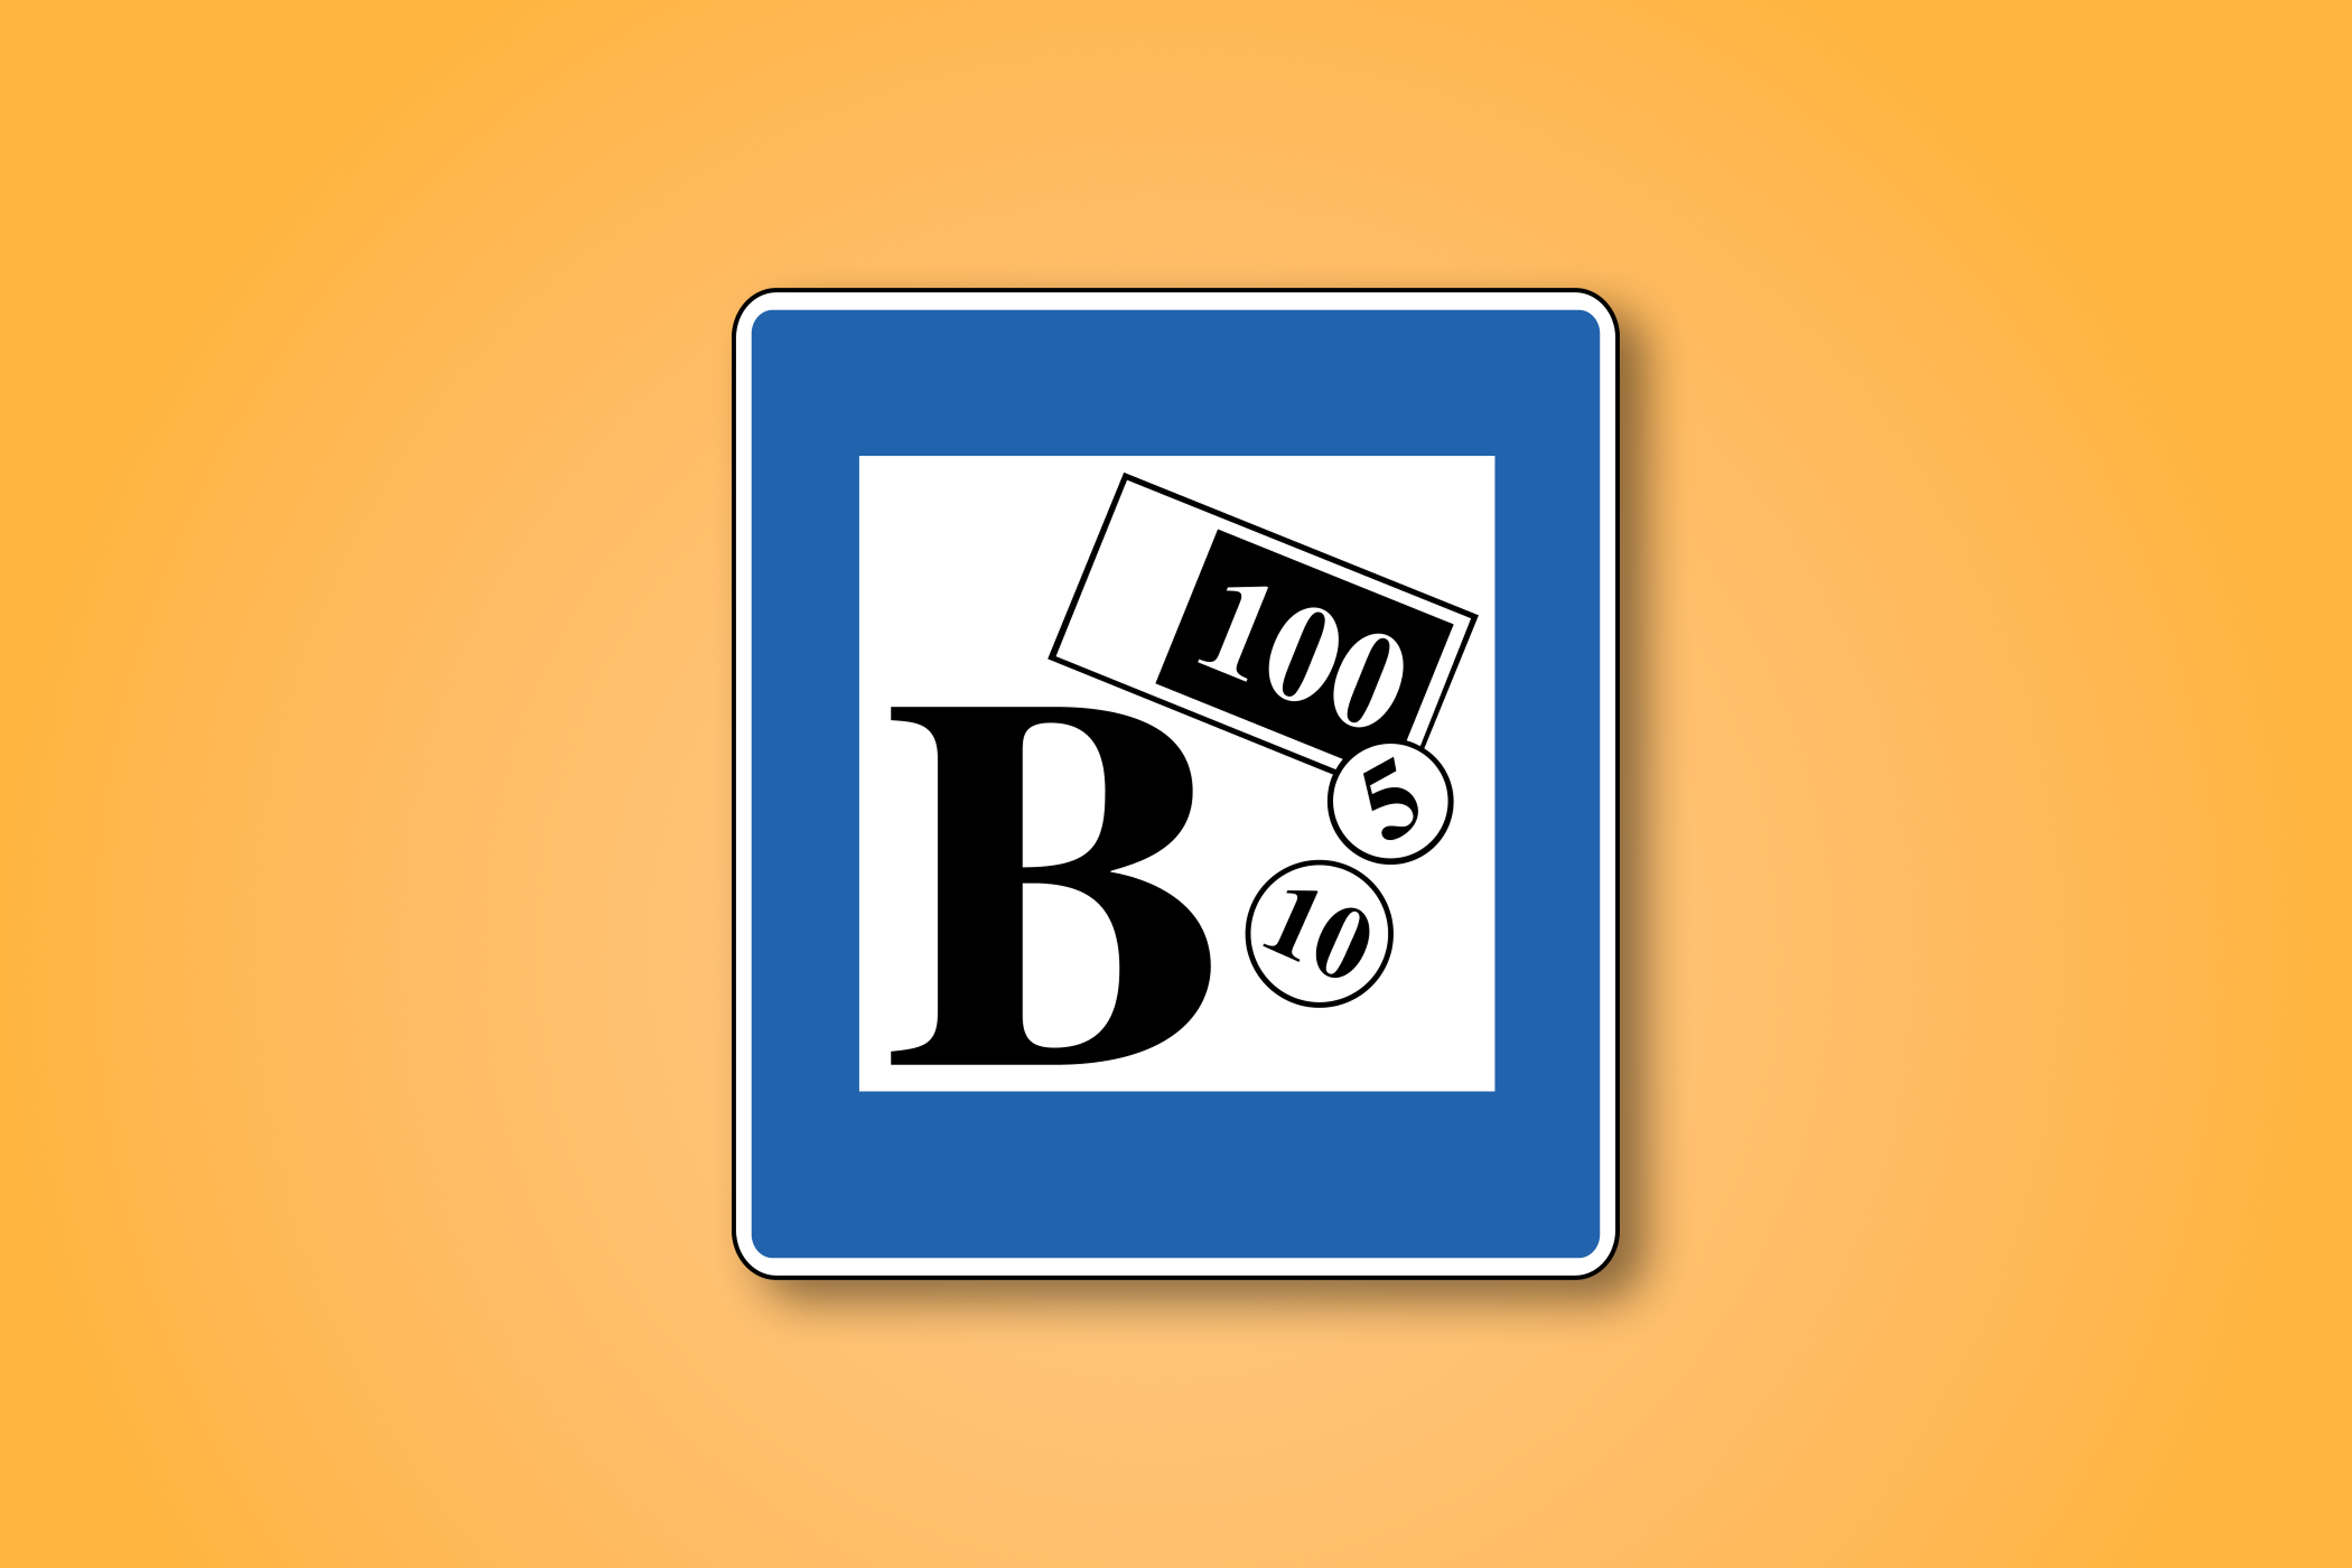 一块蓝色和白色的方形路标，中间有大写字母"B"和货币符号的图案。这个路标表示前方有银行。